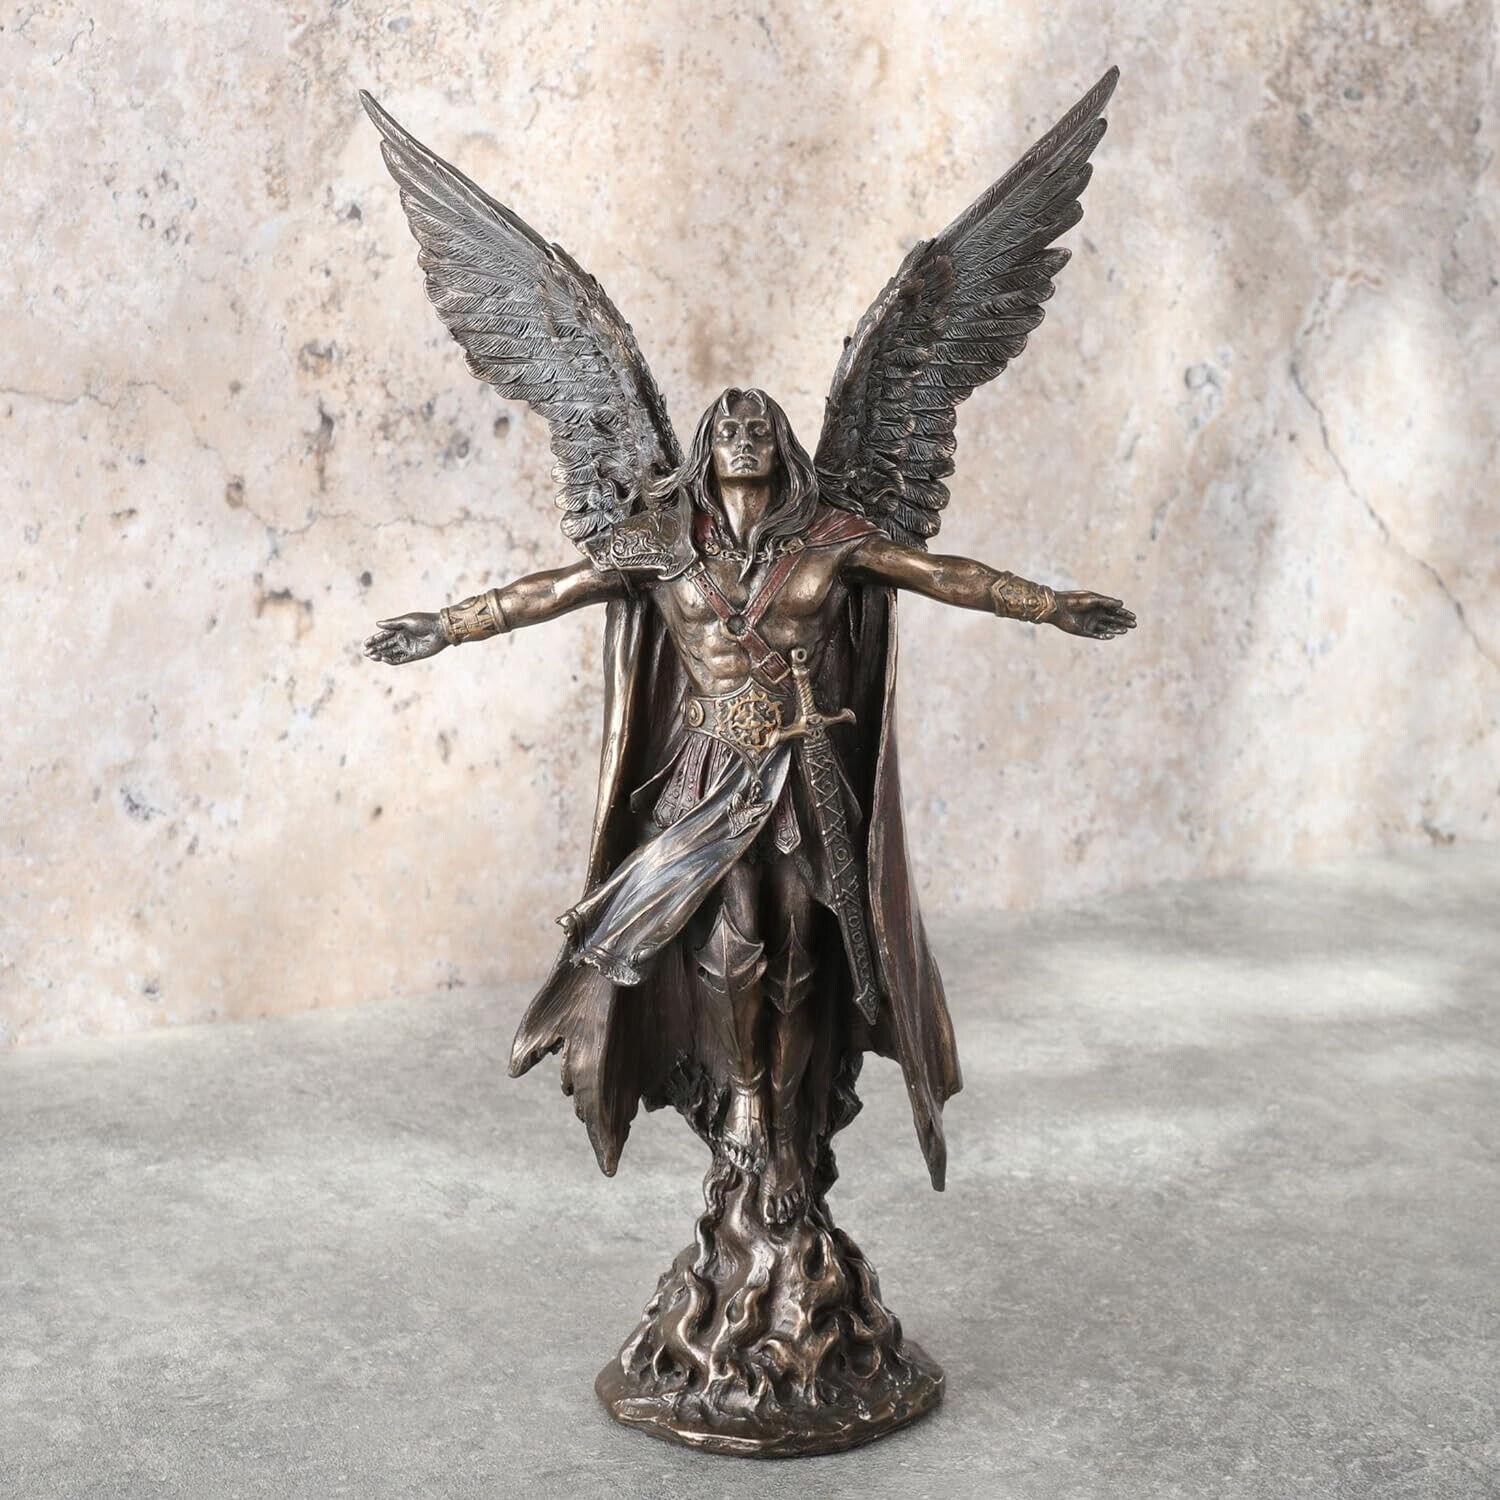 Ascending Saint Michael Archangel Statue 11-inch Statue Sculpture figurine